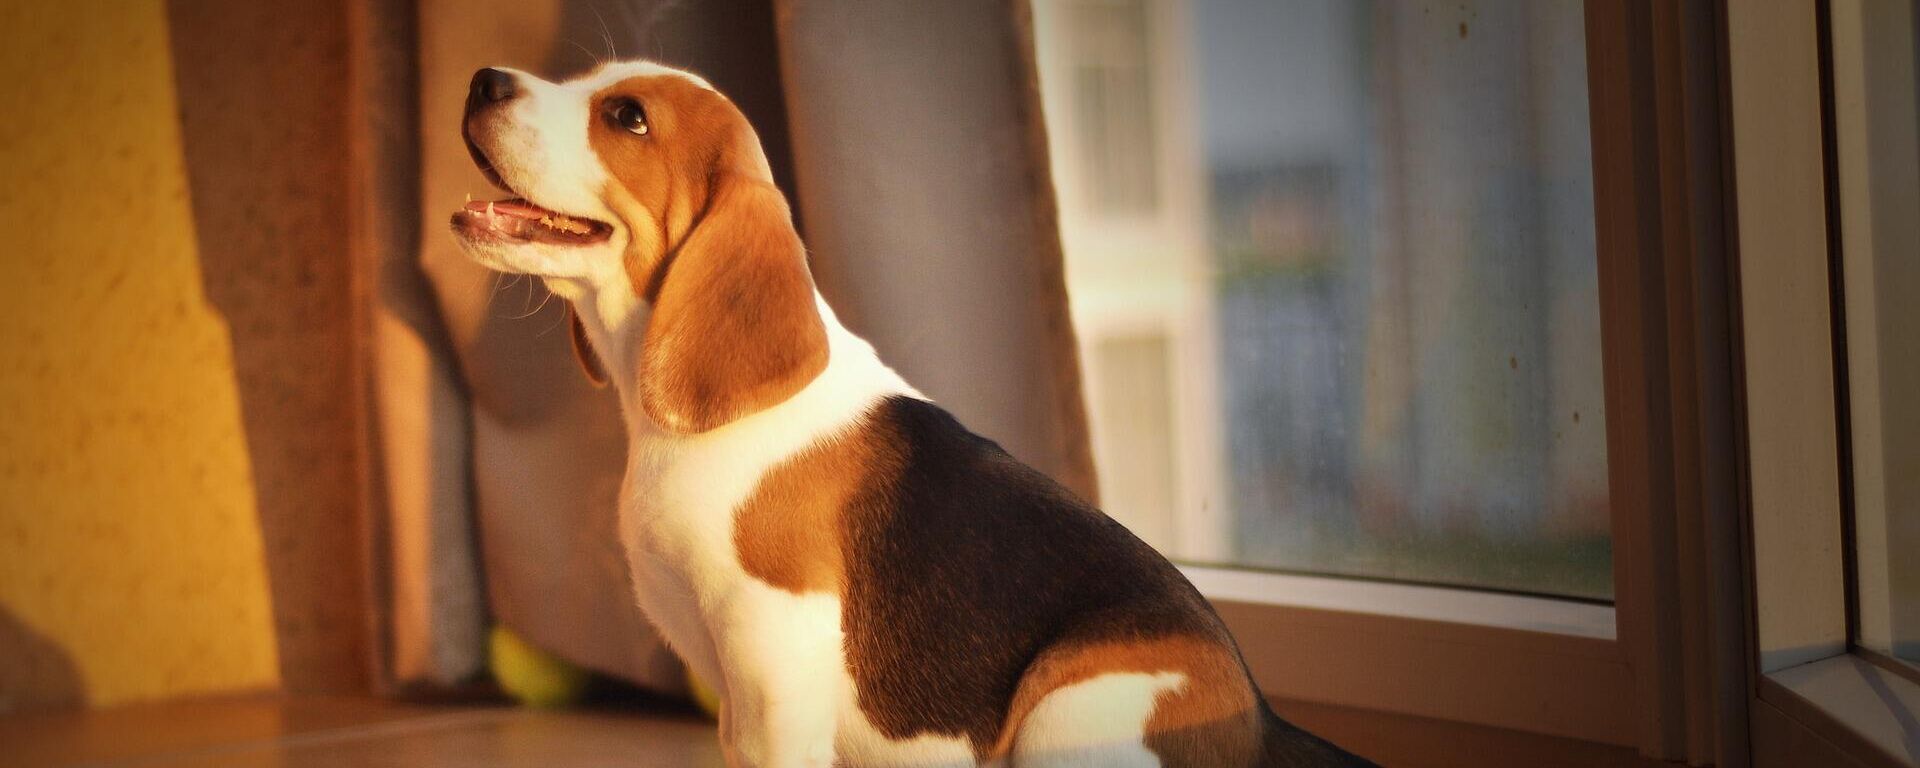 Un cachorro de raza beagle - Sputnik Mundo, 1920, 13.02.2021